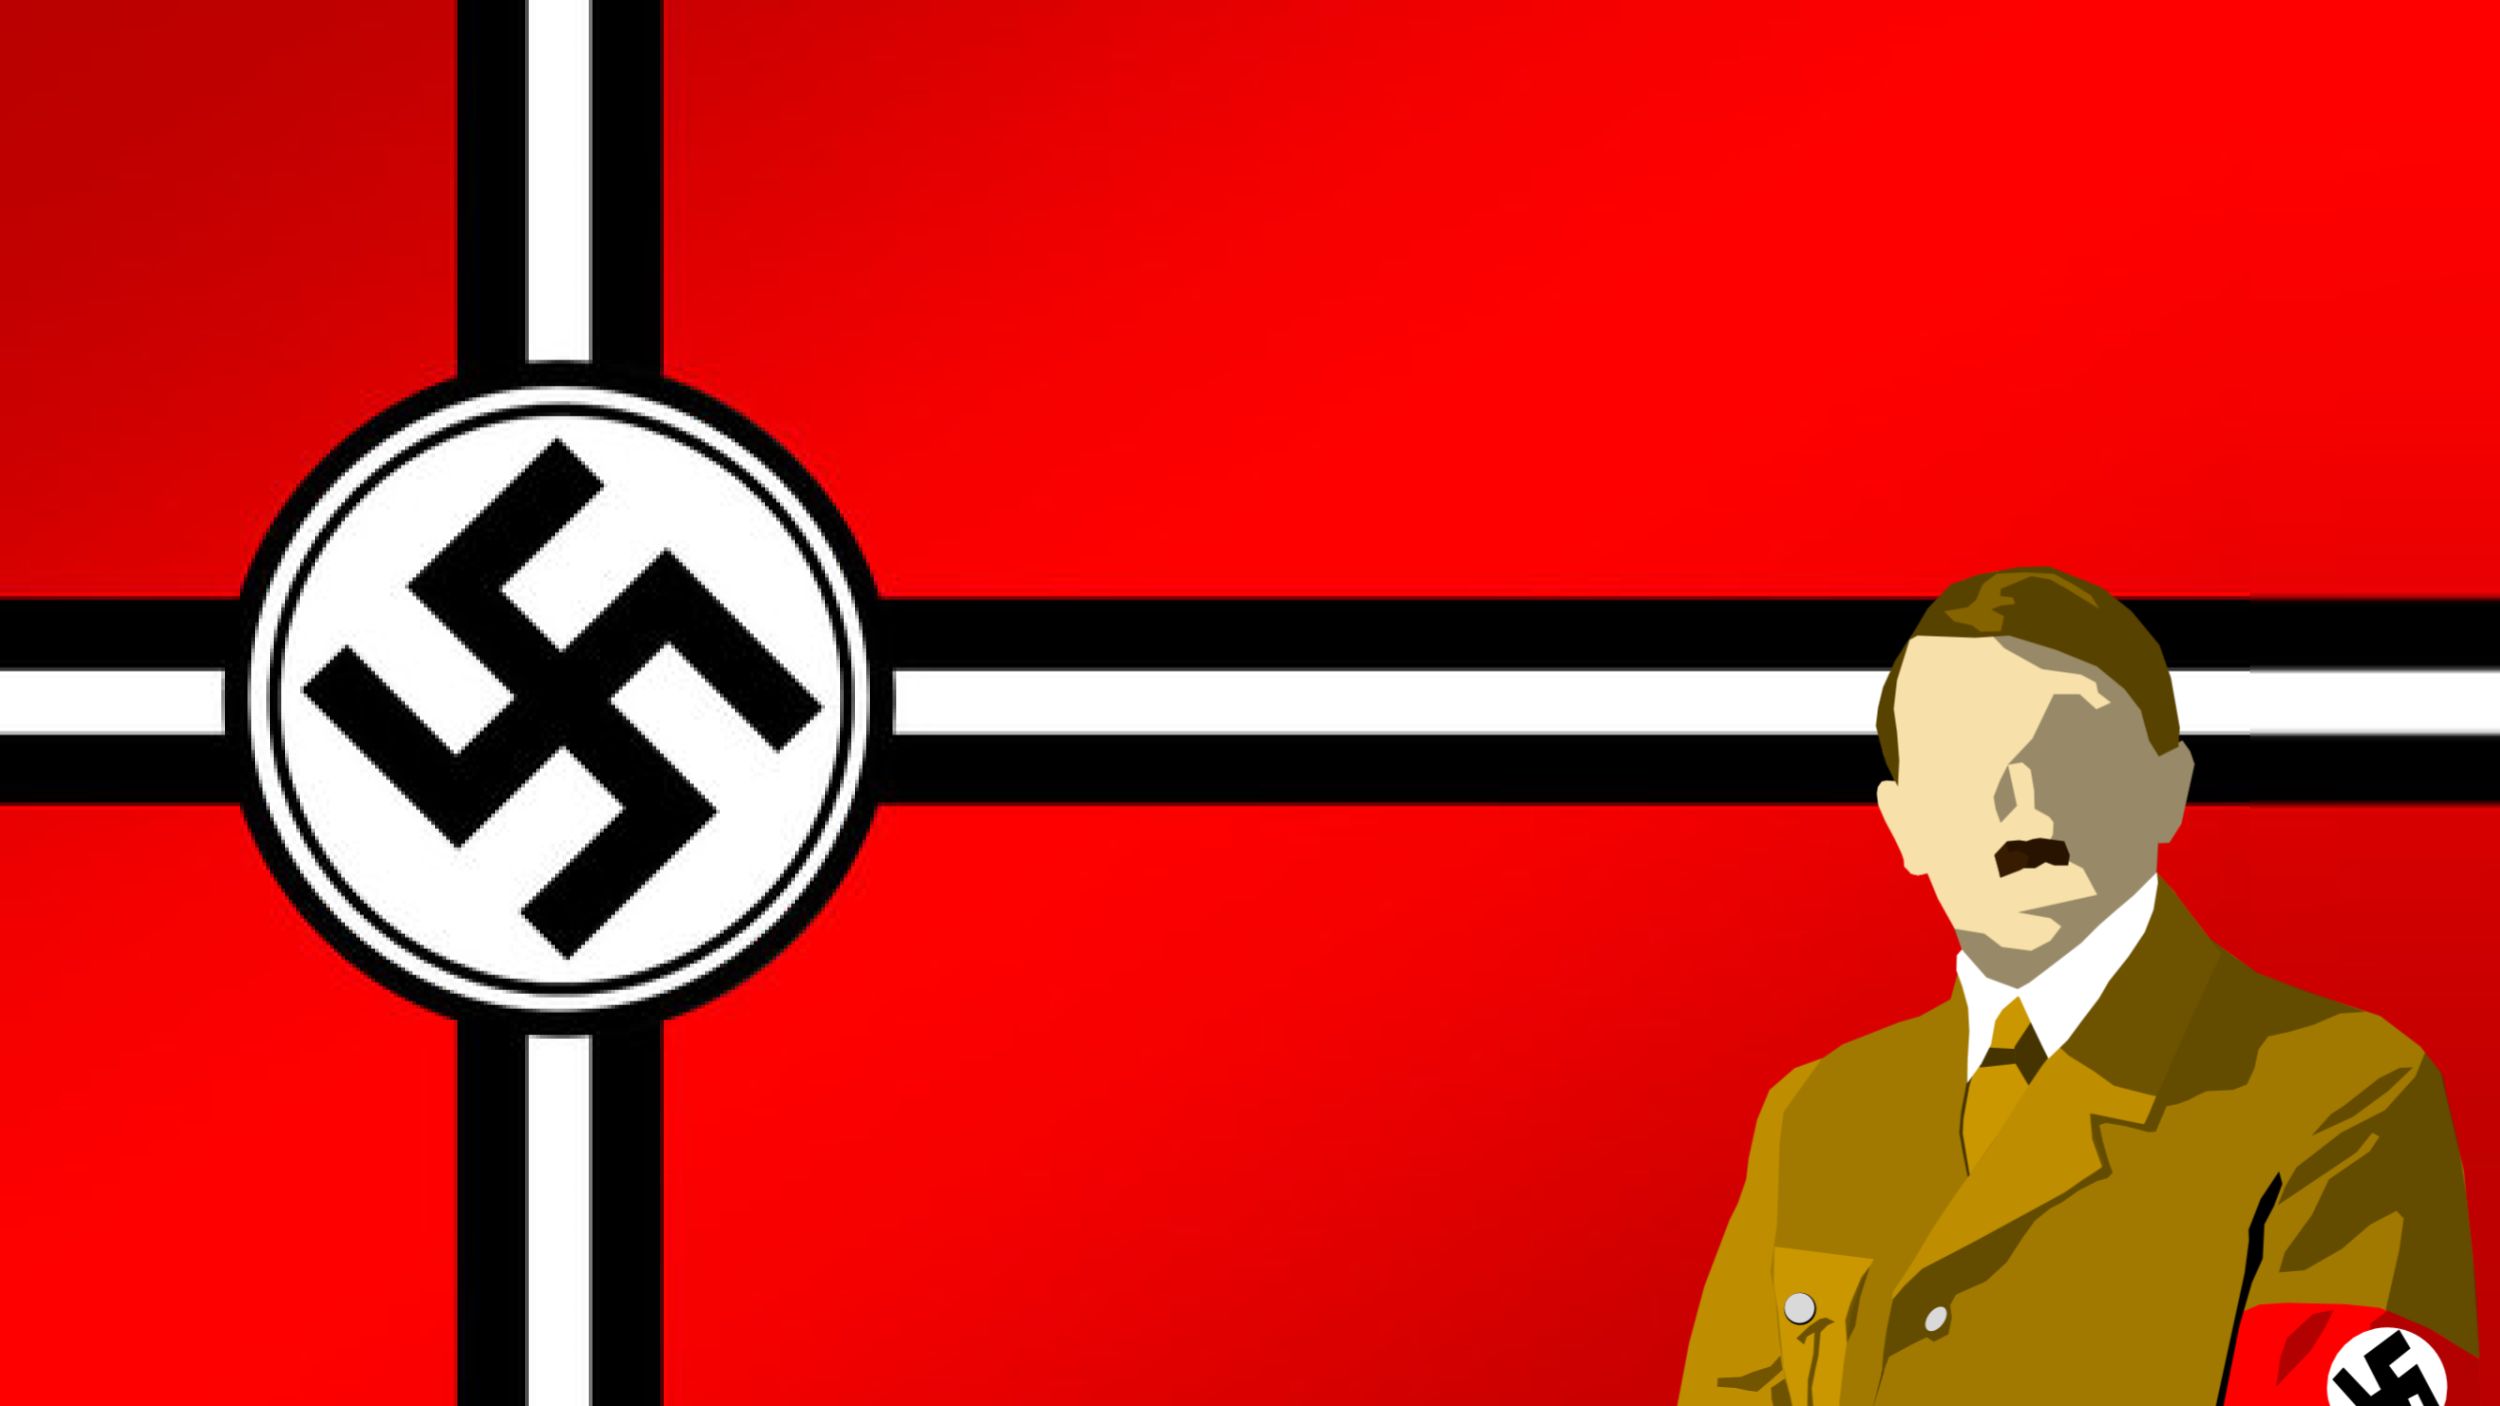 Флаг 3 рей. Флаг Адольфа Гитлера.